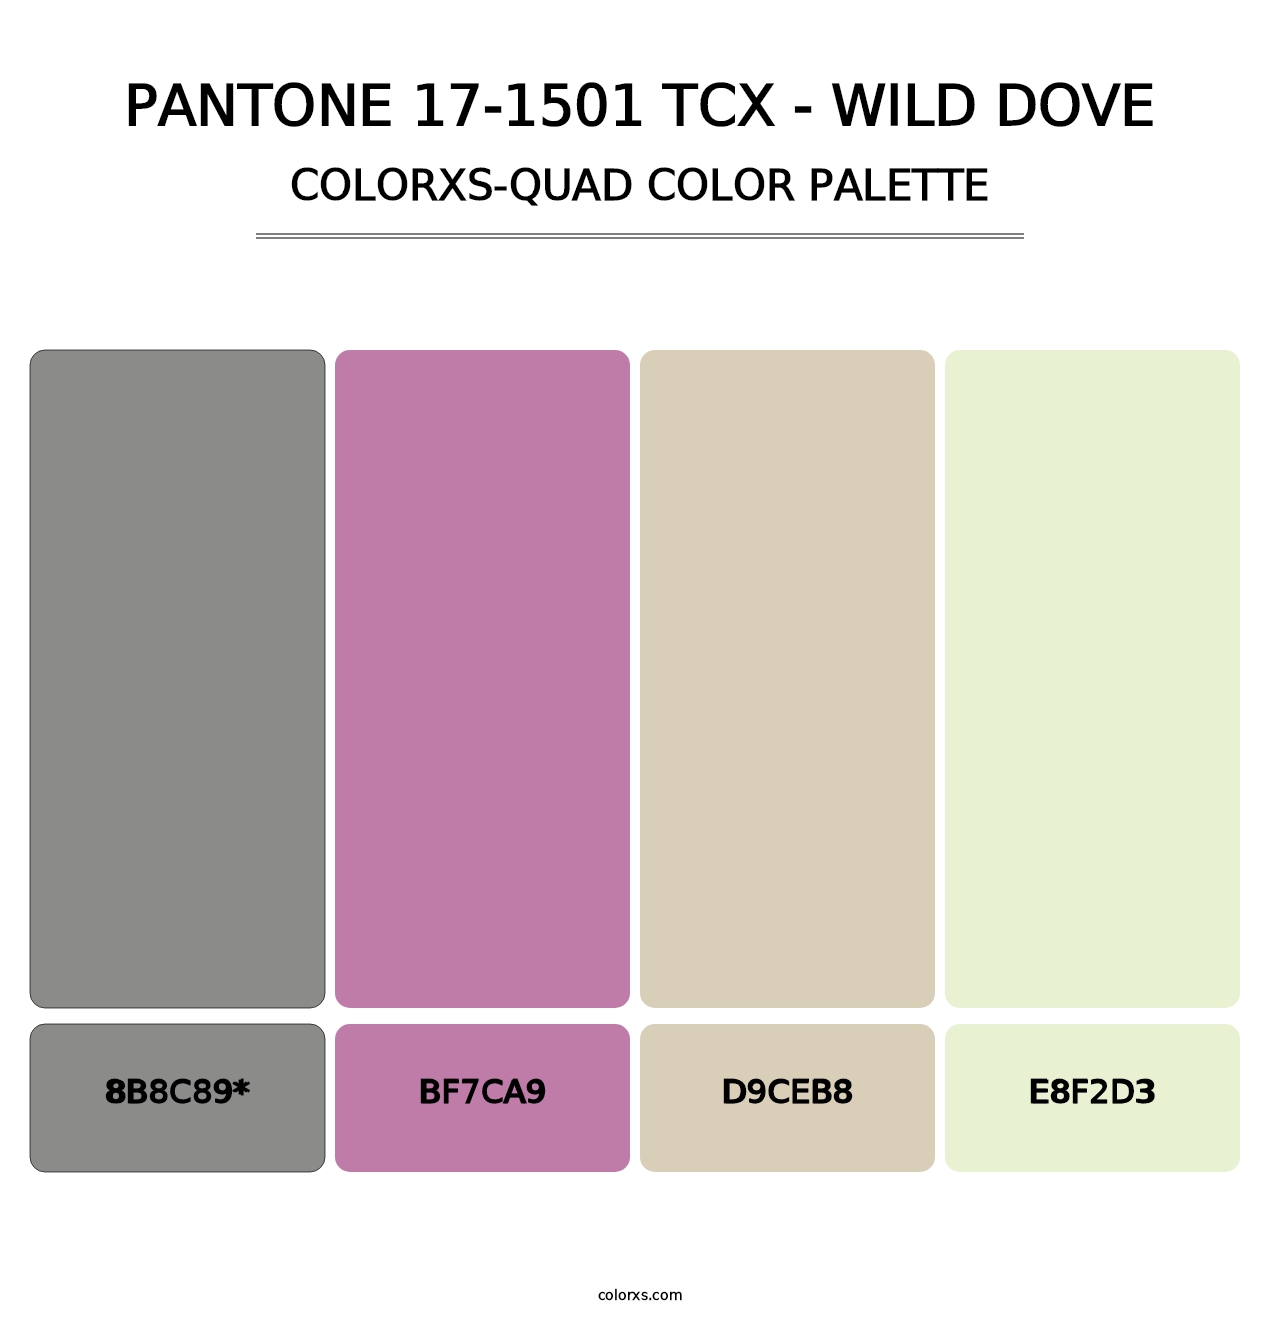 PANTONE 17-1501 TCX - Wild Dove - Colorxs Quad Palette